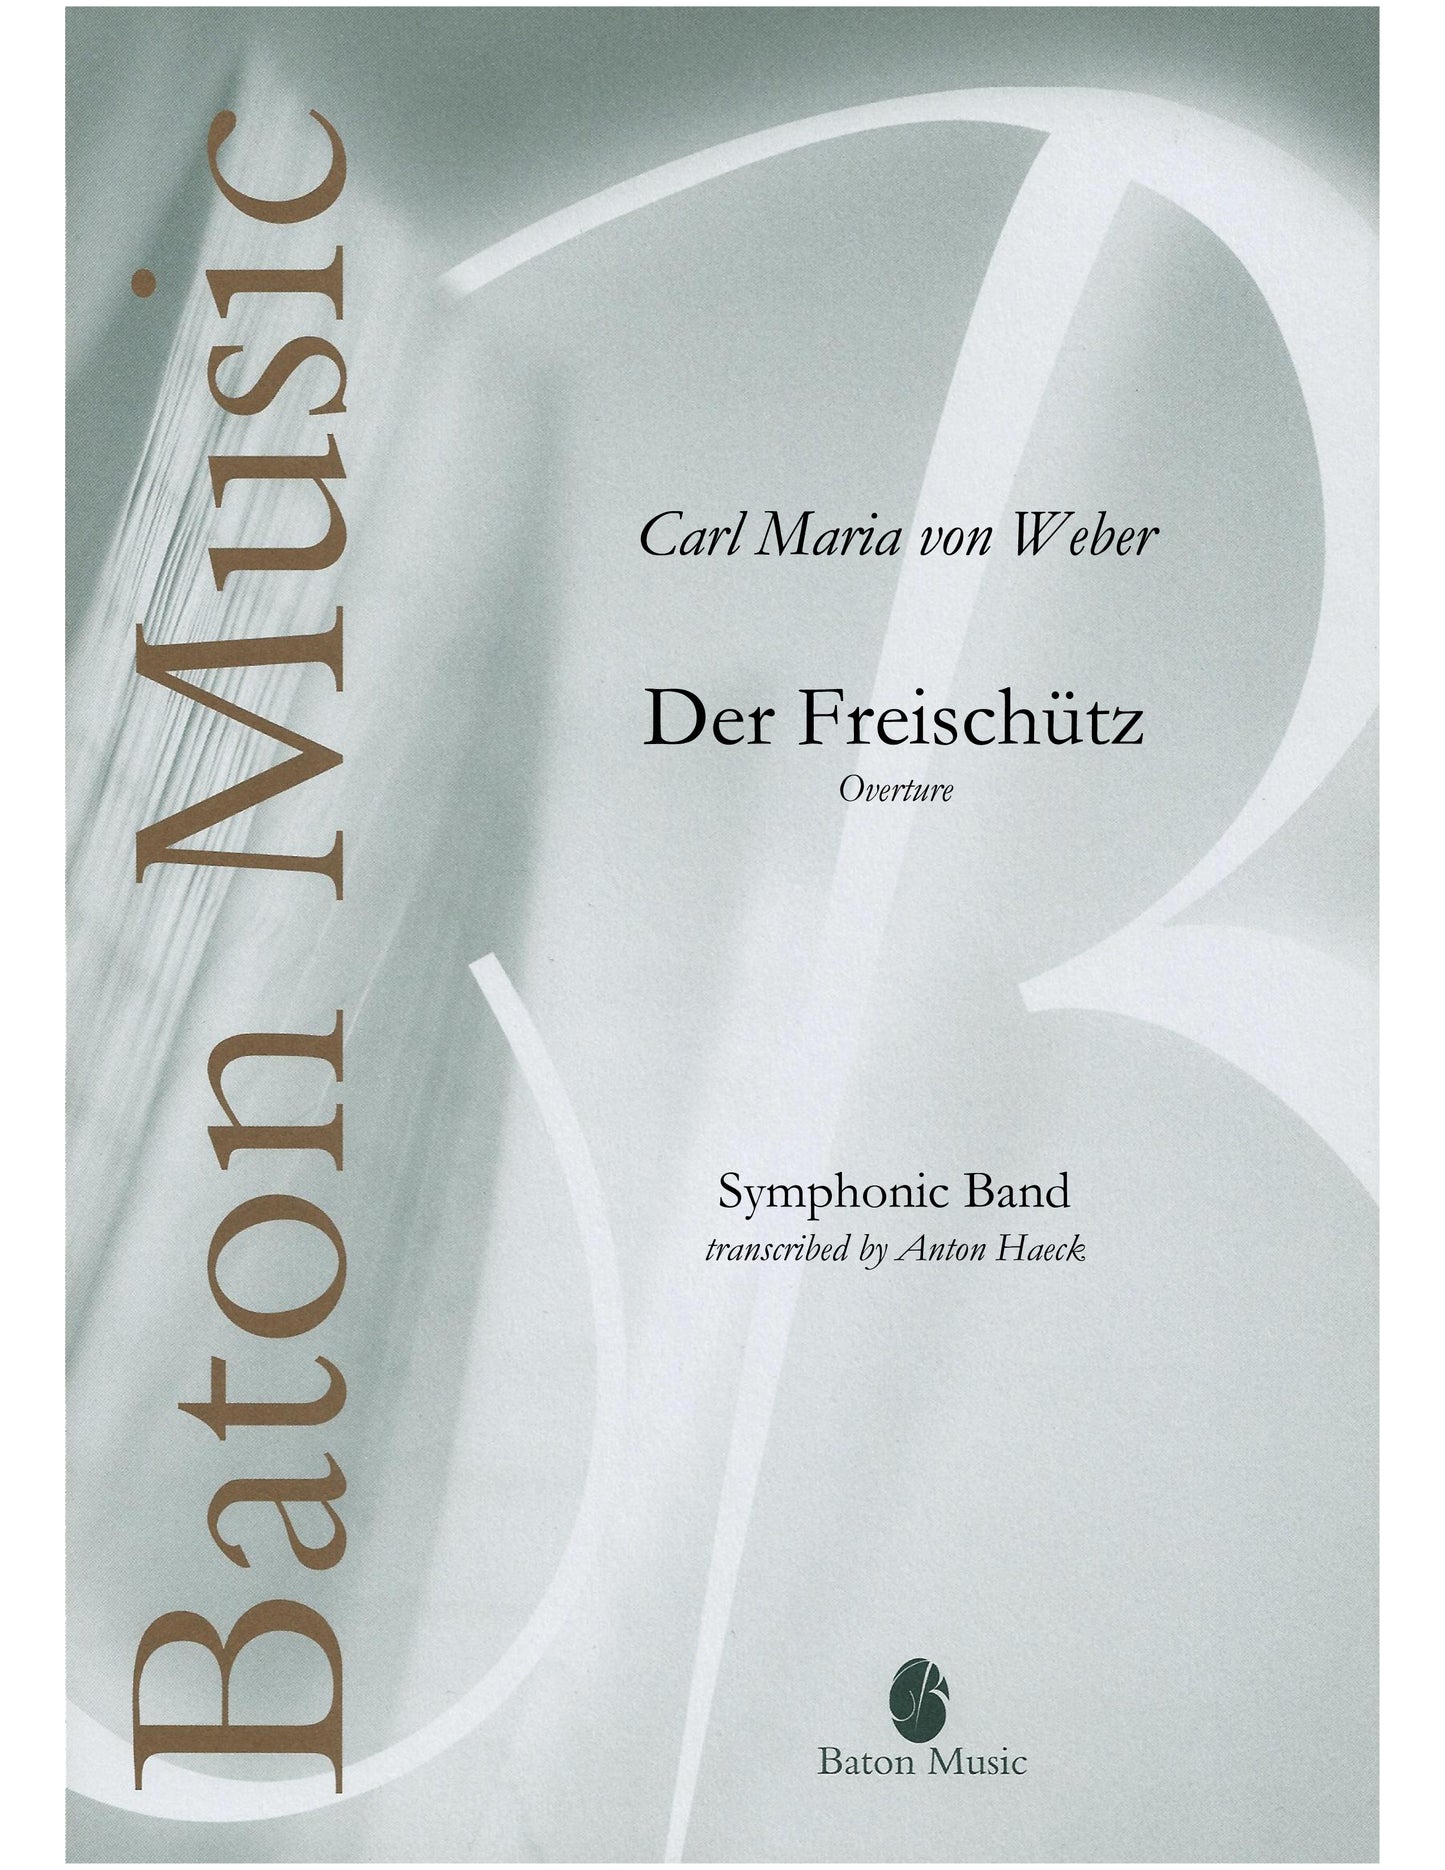 Der Freischütz (Overture) - C. M von Weber